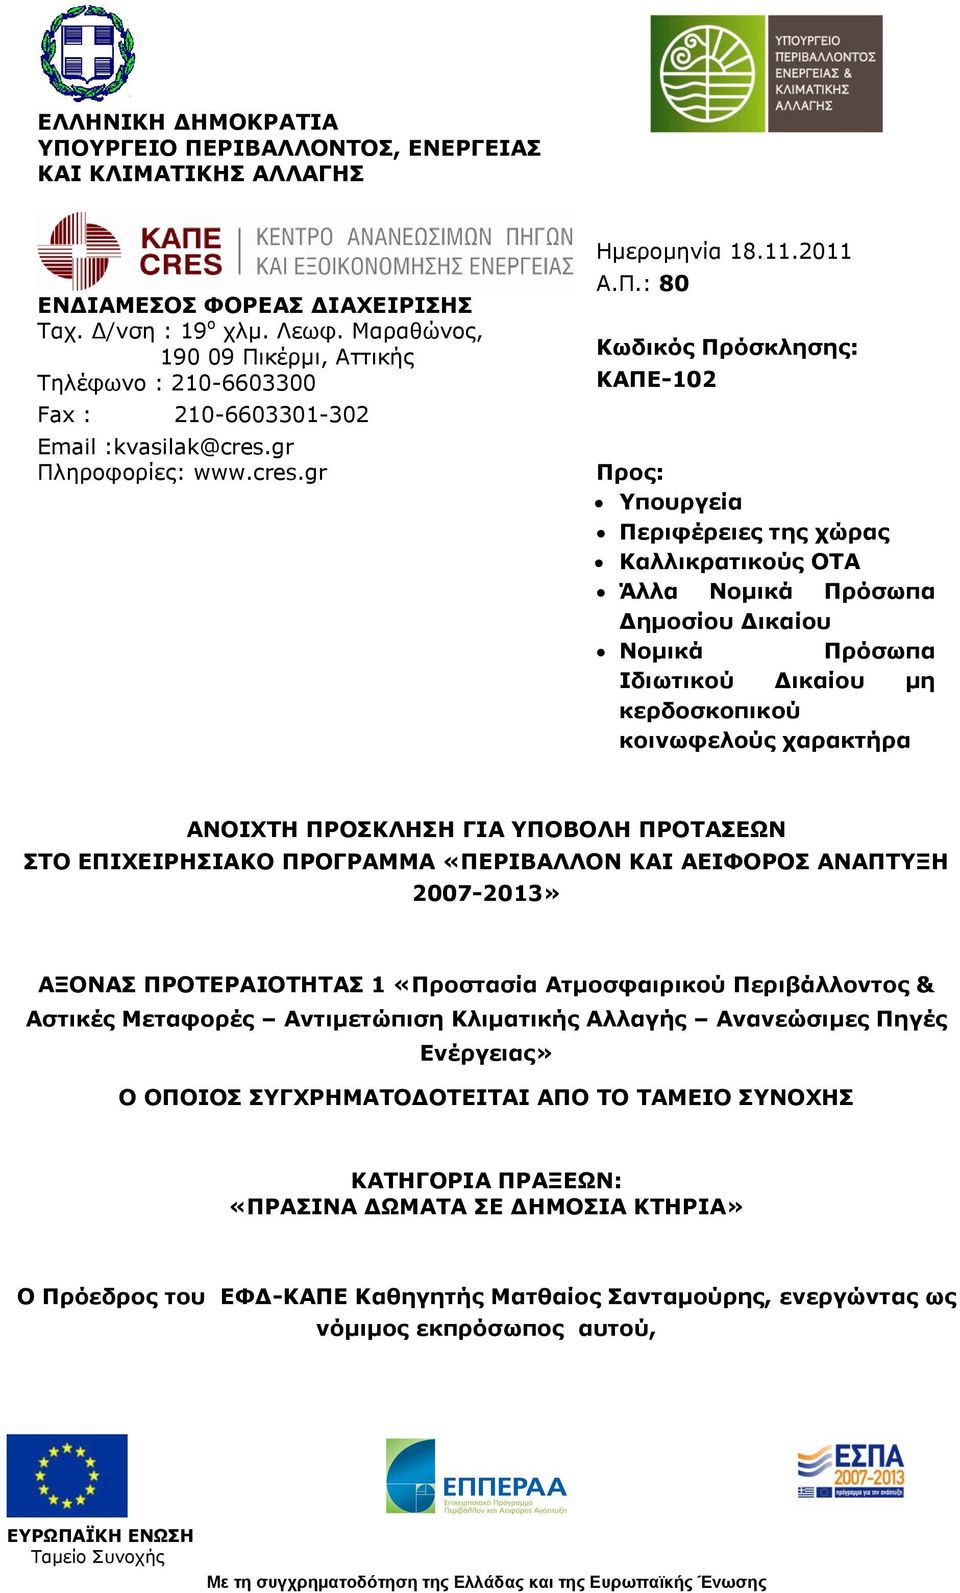 κέρμι, Αττικής Τηλέφωνο : 210-6603300 Fax : 210-6603301-302 Email :kvasilak@cres.gr Πλ